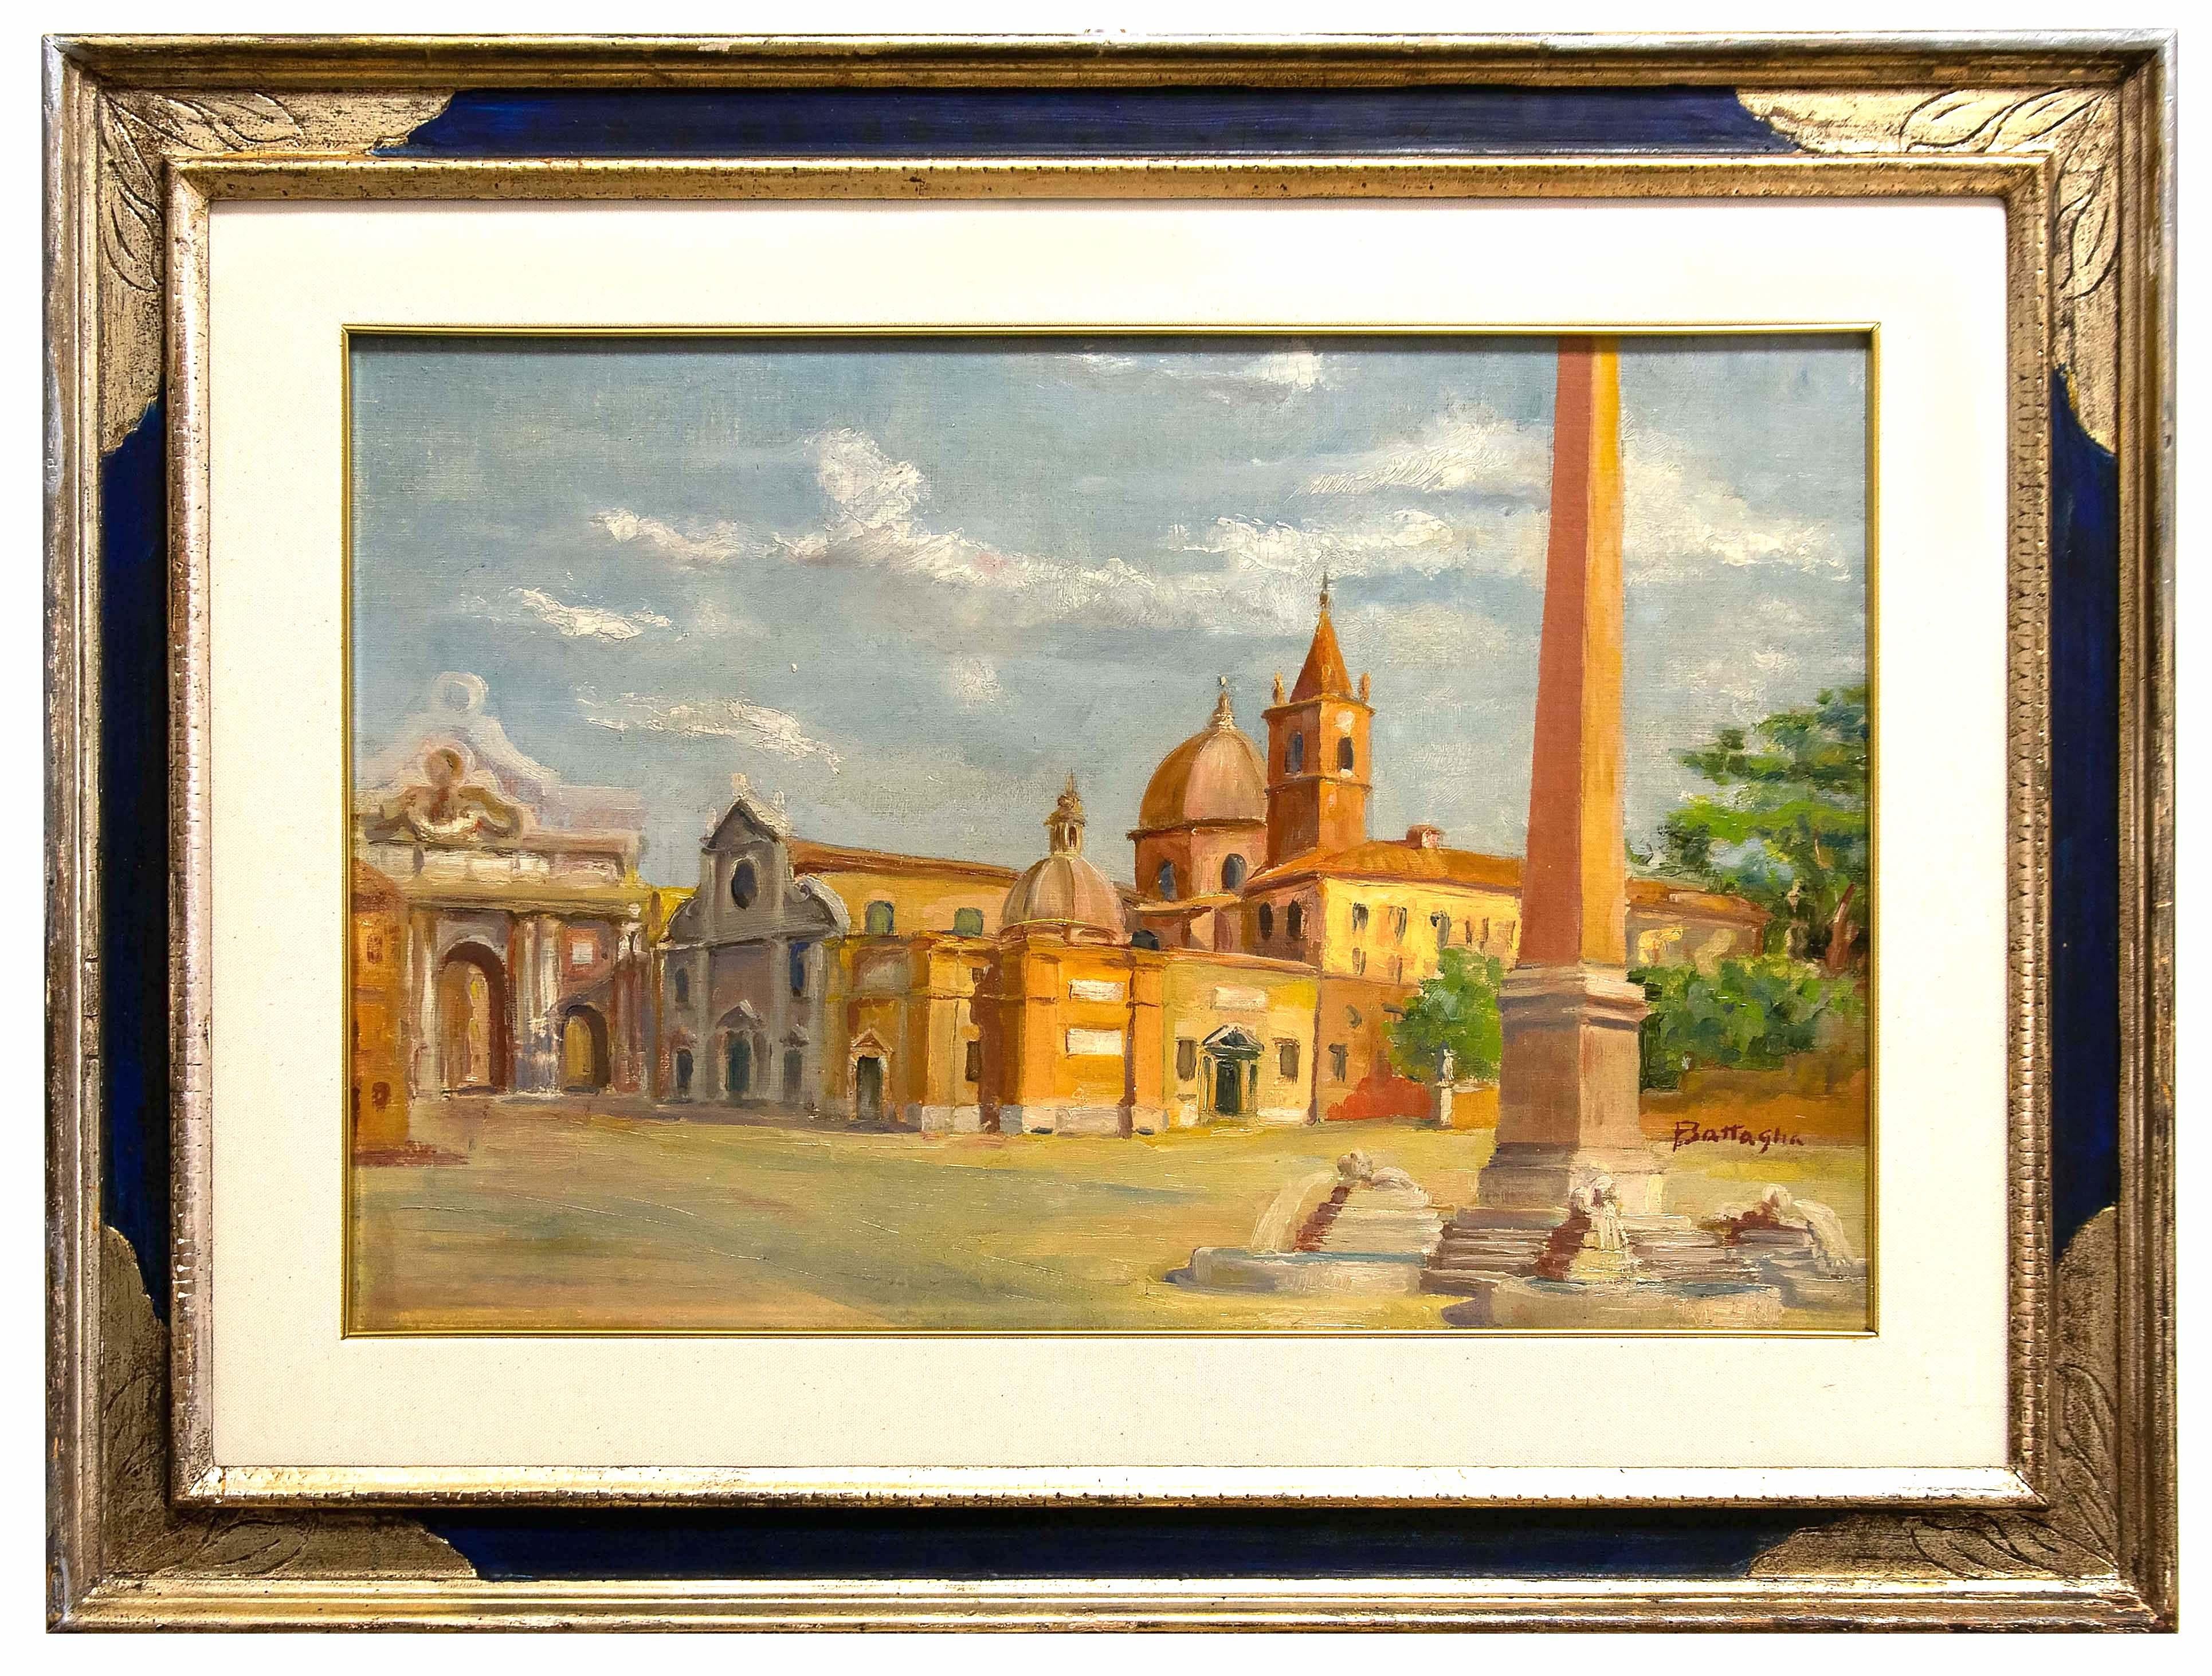 Alessandro Battaglia Figurative Painting - Piazza del Popolo, Rome - Oil on Cardboard - Early 20th Century 